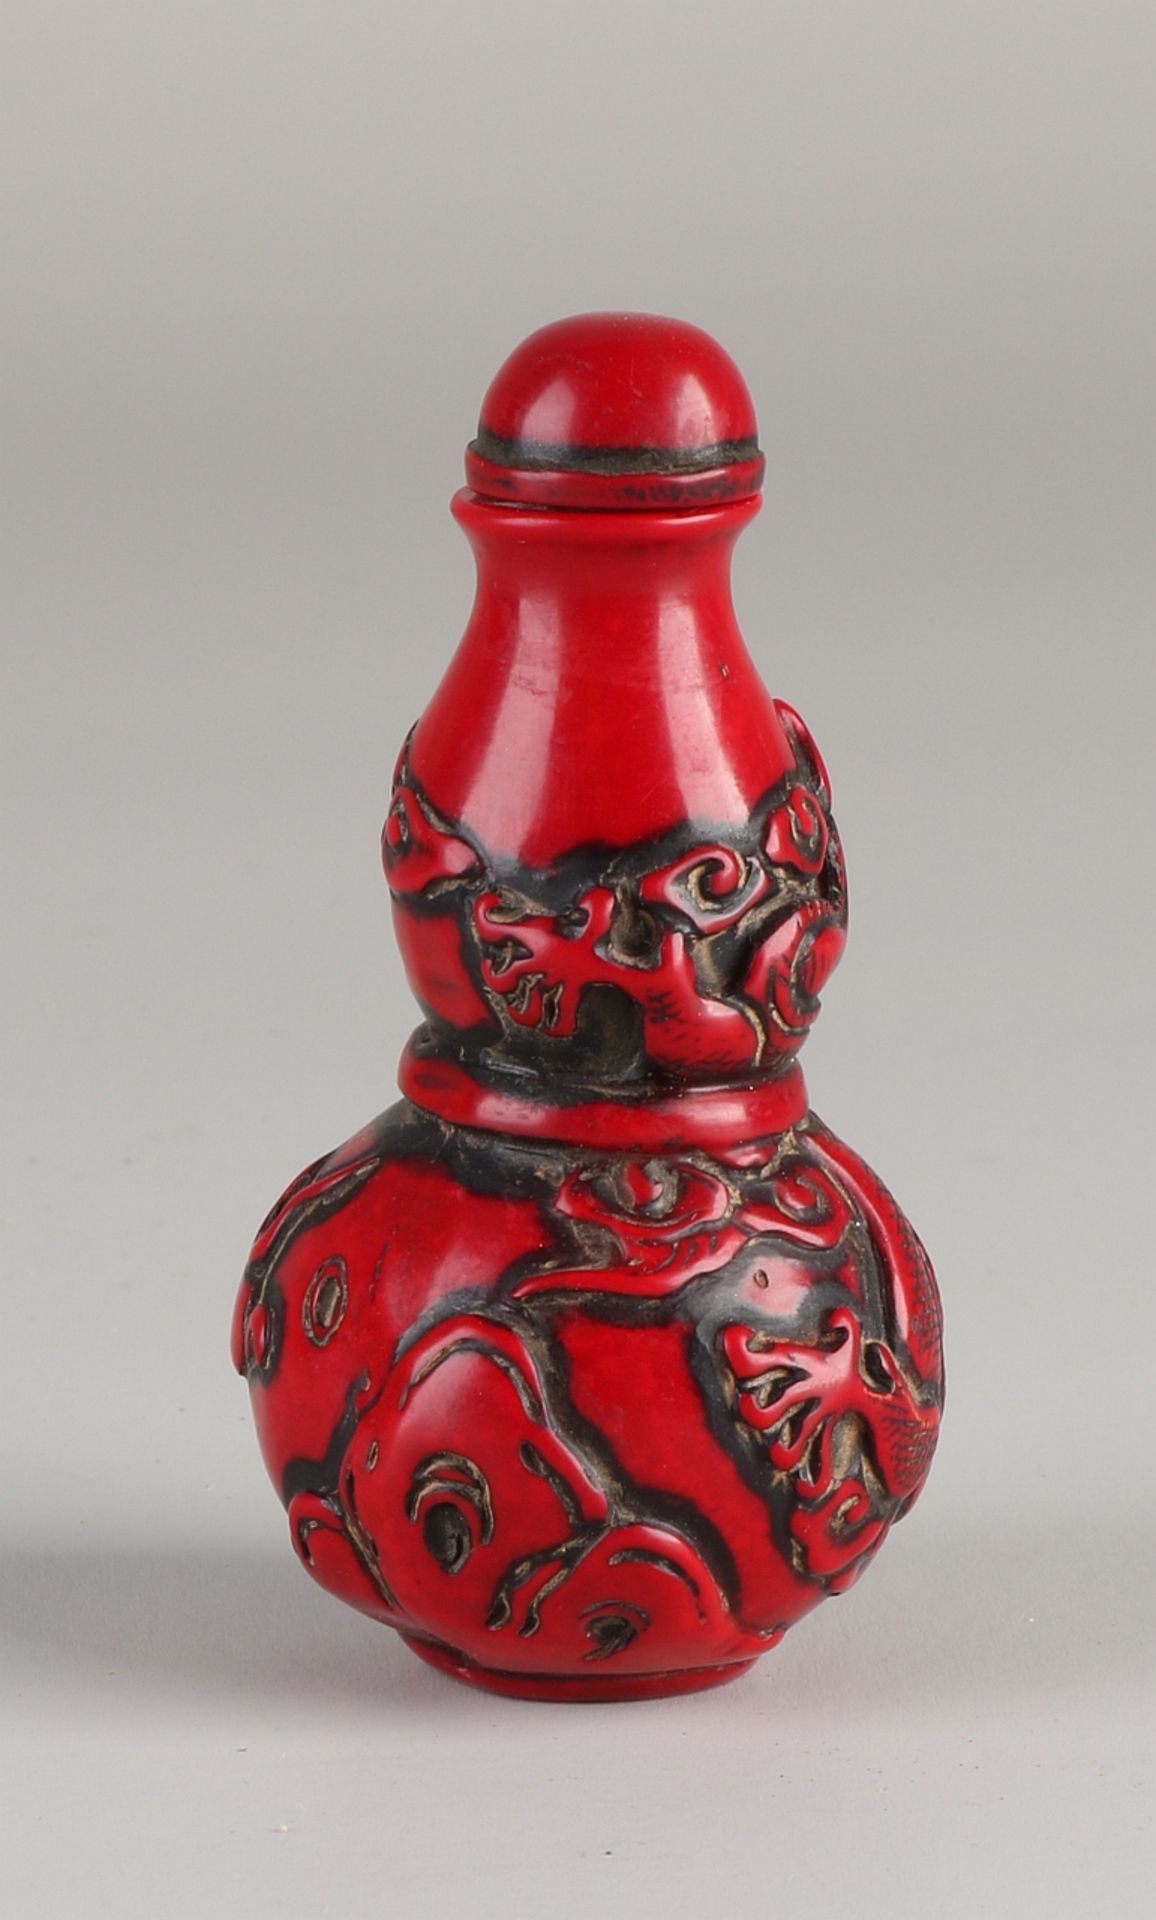 Alte chinesische Schnupftabakflasche aus rotem Lack mit Drachendekoration. Größe: 7,5 cm. In gu - Bild 2 aus 2